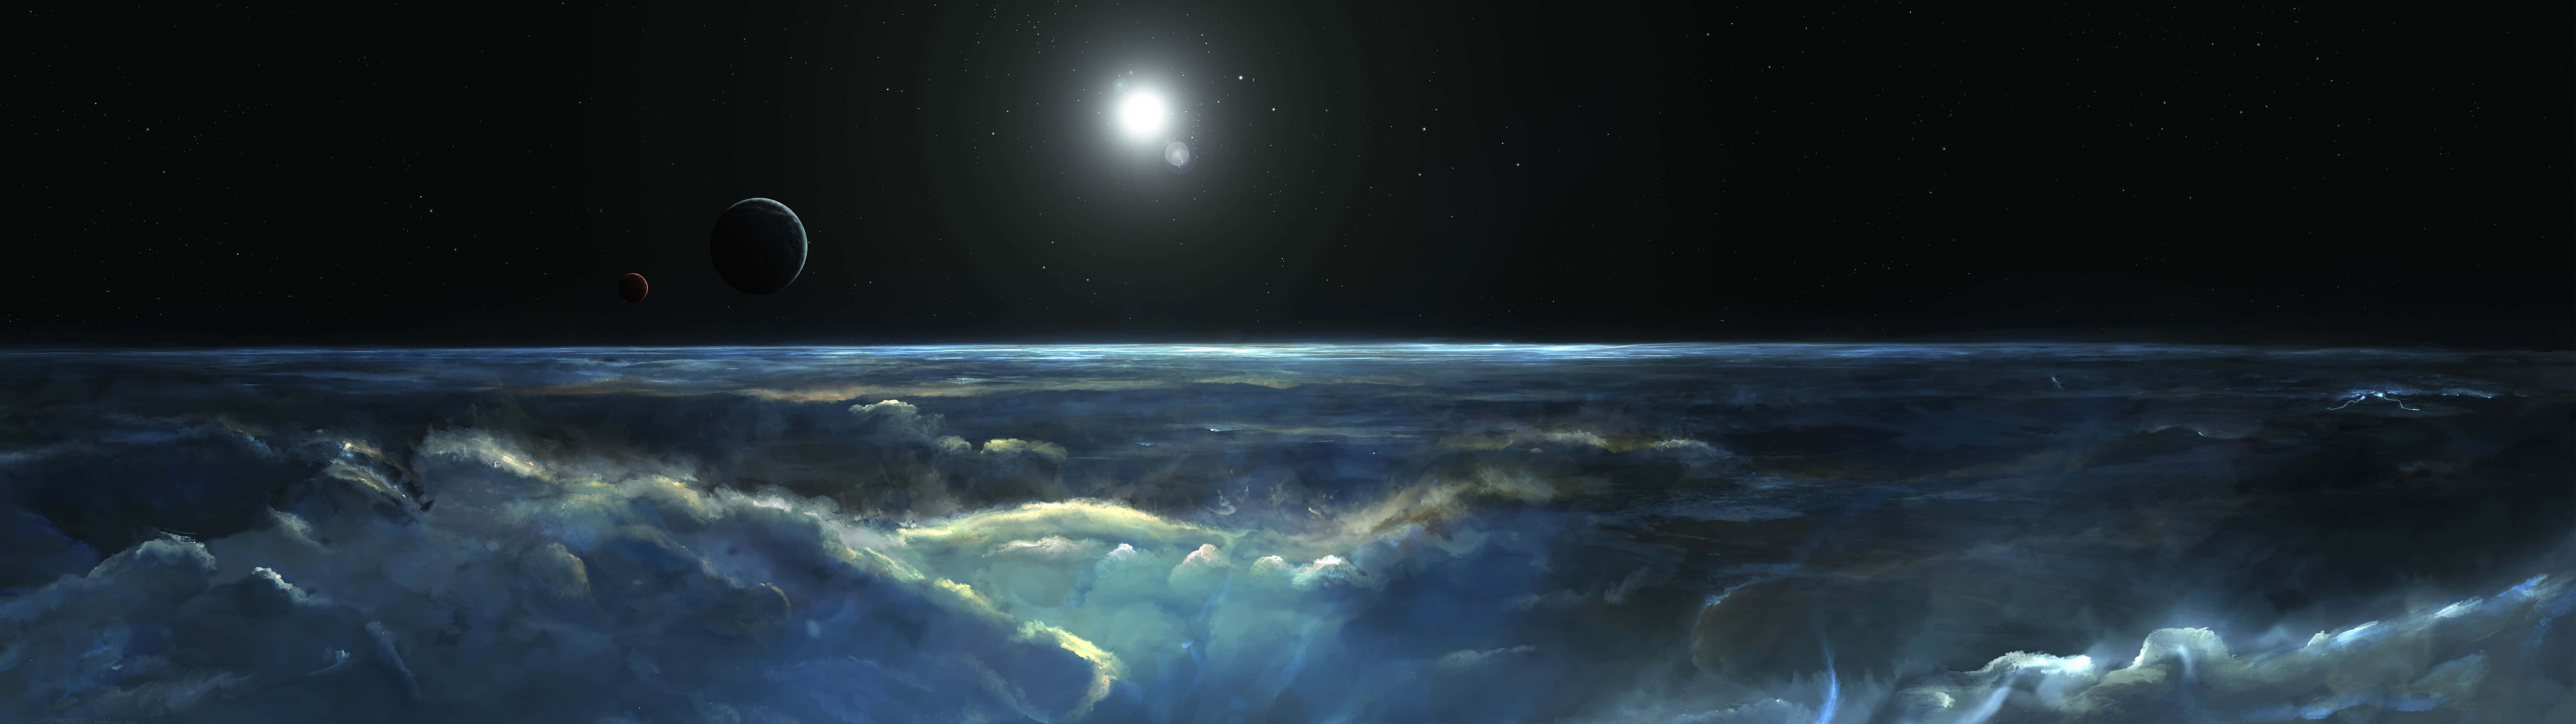 Einekünstlerische Darstellung Eines Planeten Im Weltraum Wallpaper